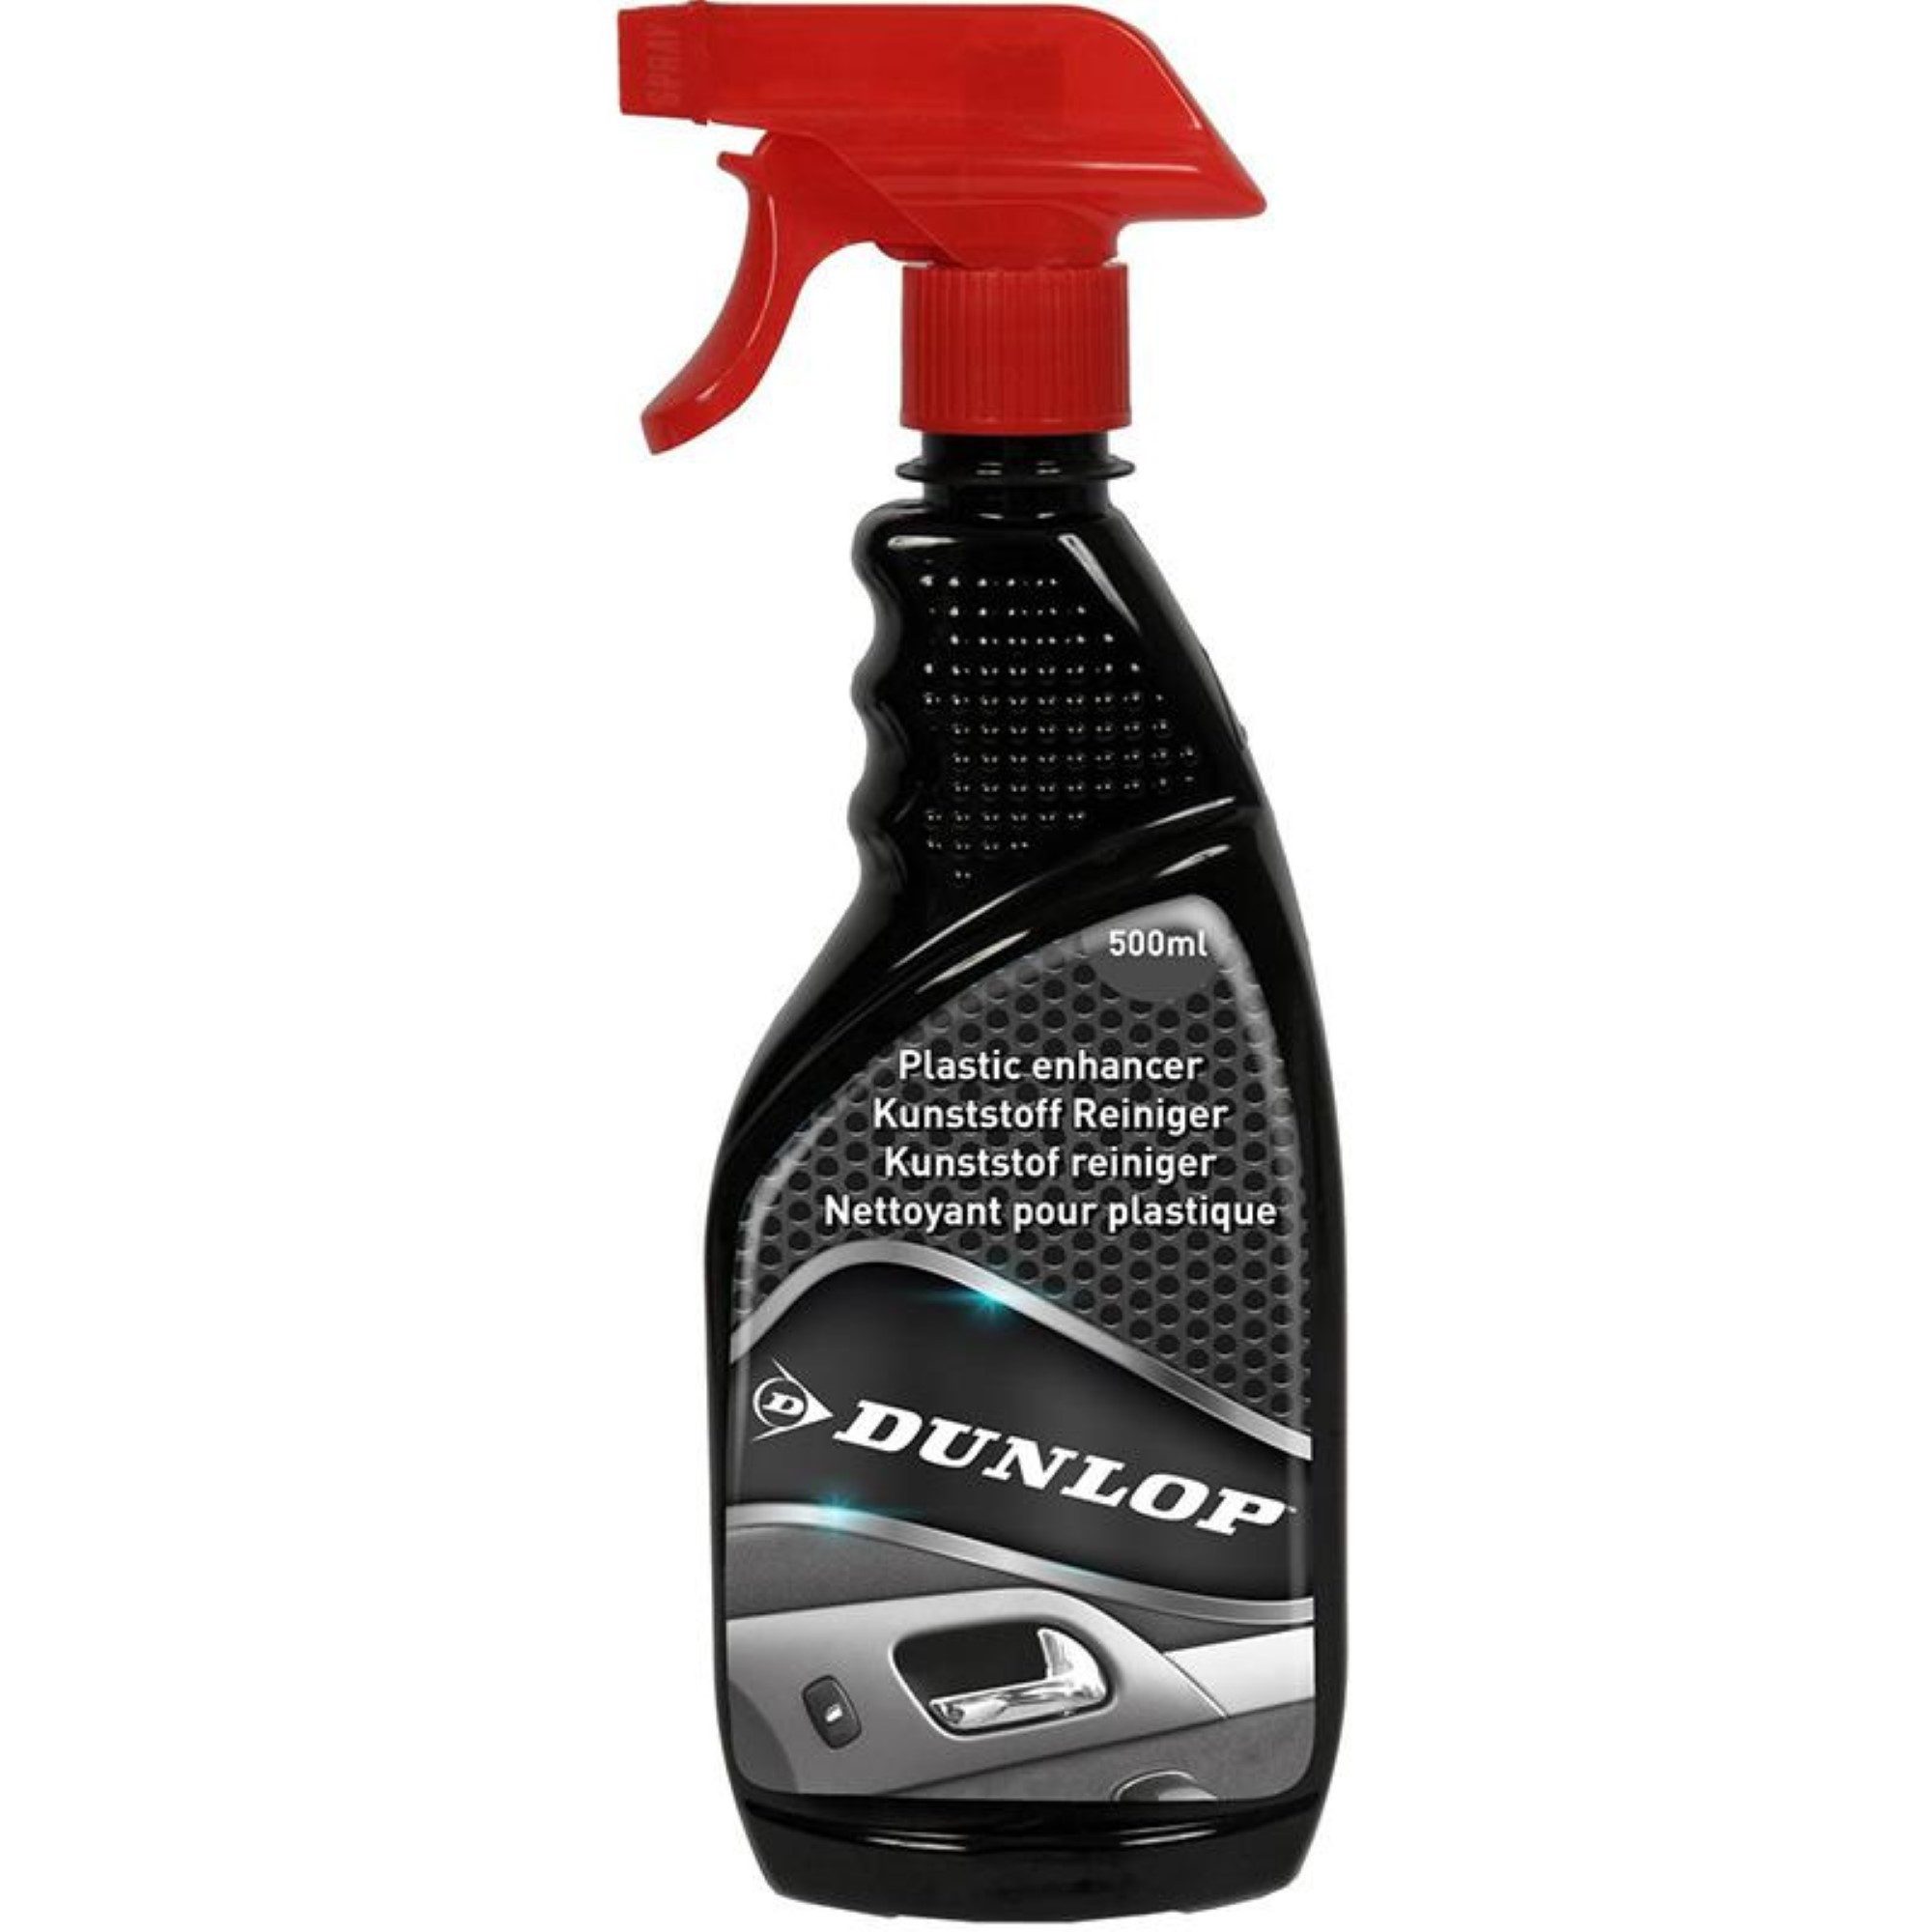 Dunlop hervorragende Reinigungsmittel für Oberflächen 500 ml Kunststoffreiniger